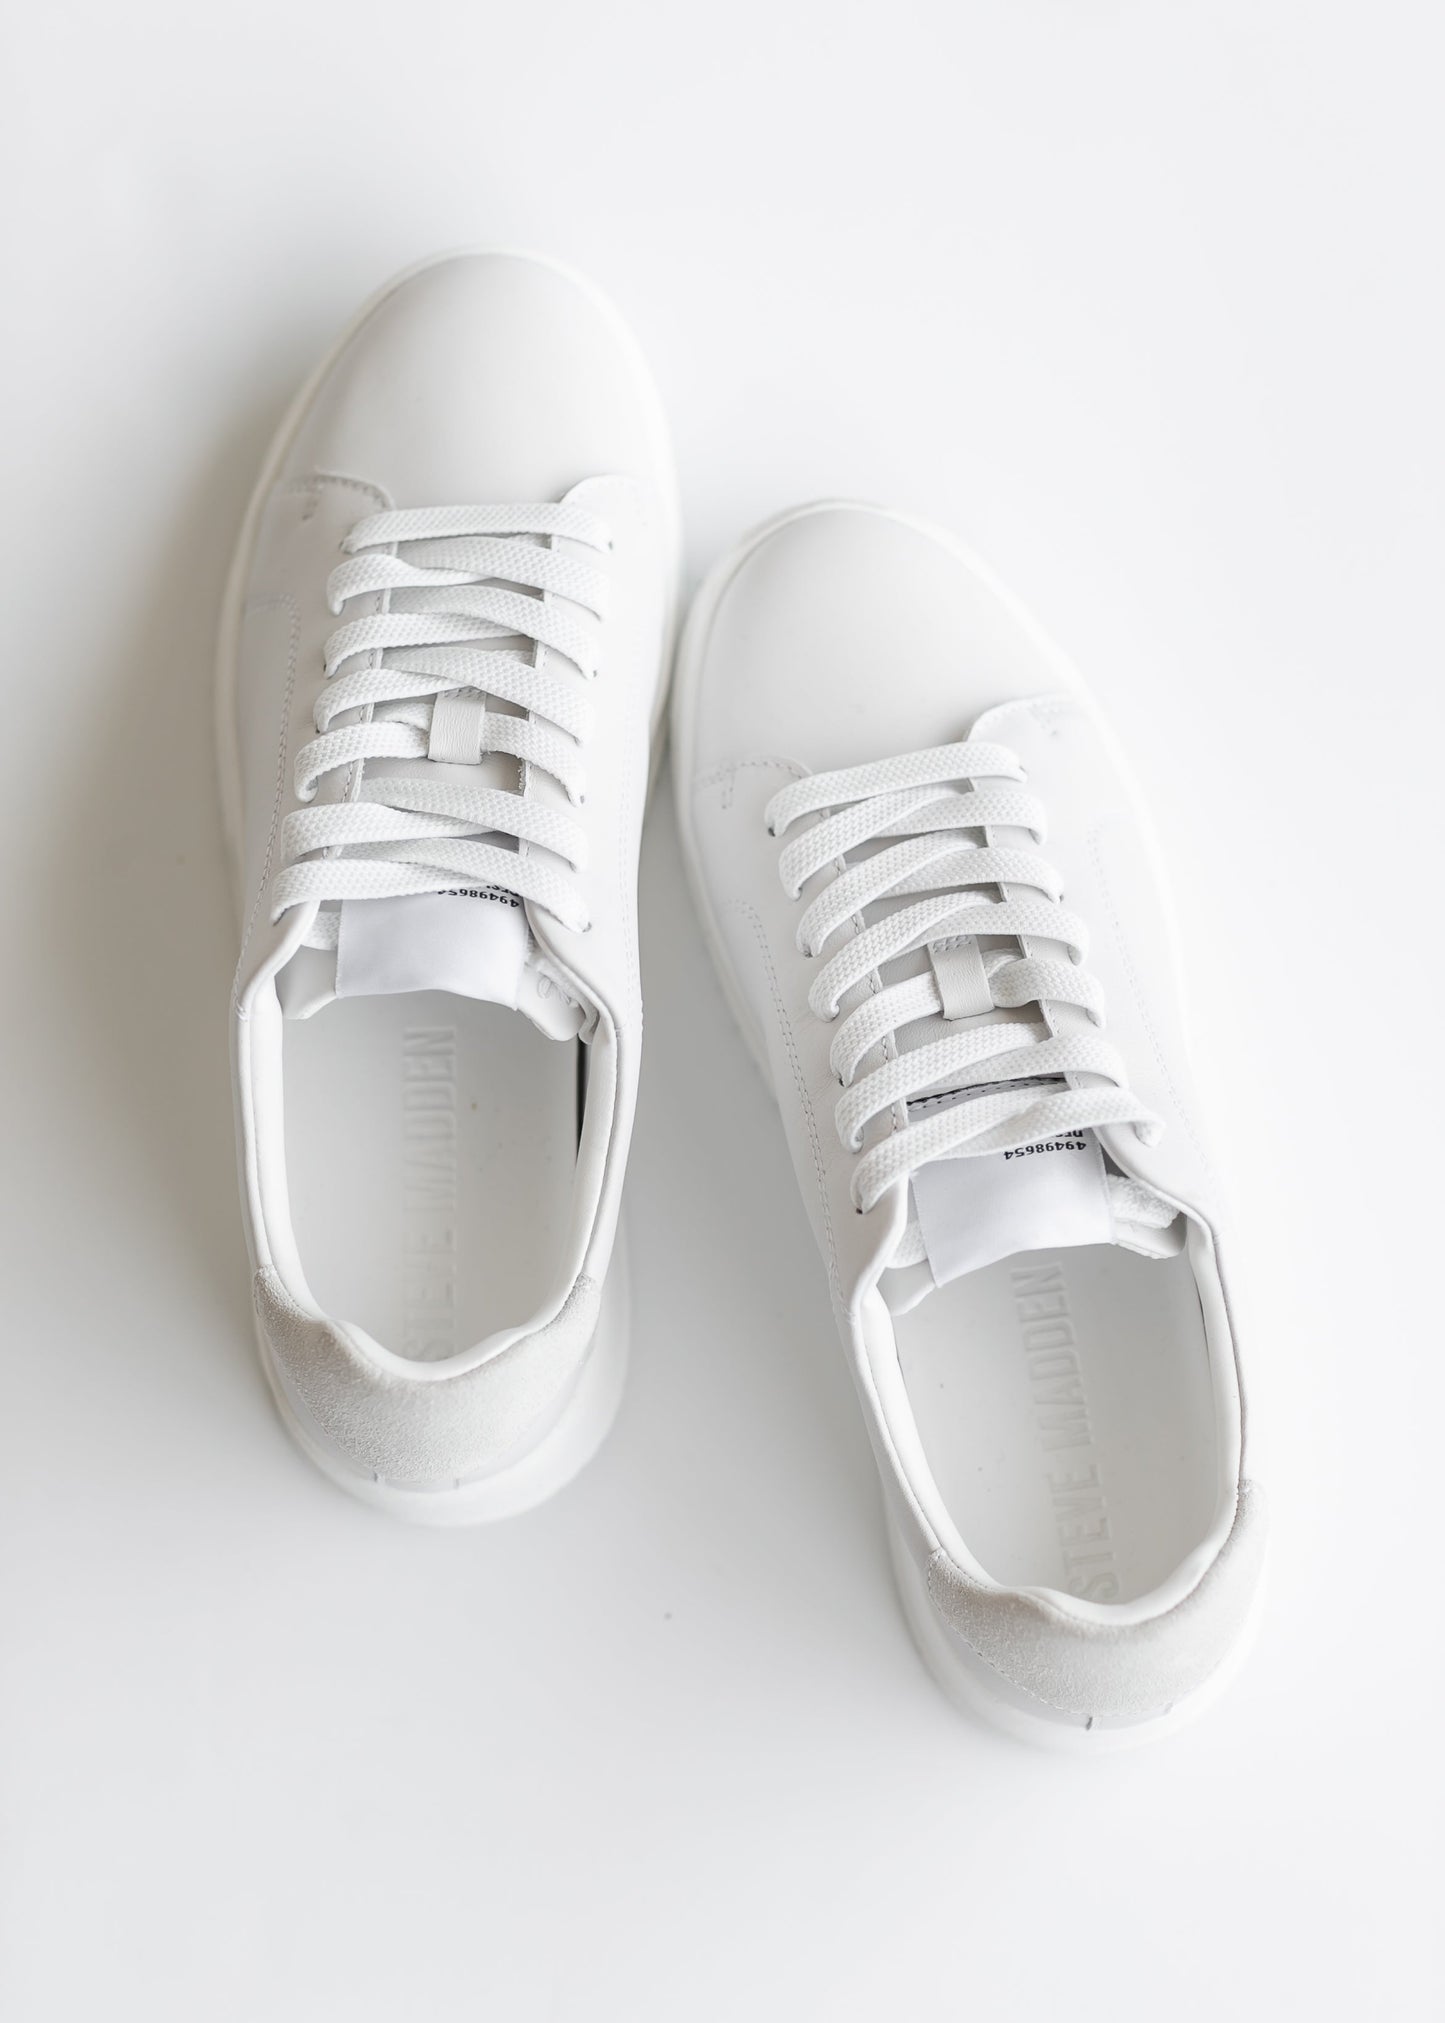 Steve Madden® Elsin Leather Platform Sneakers Shoes